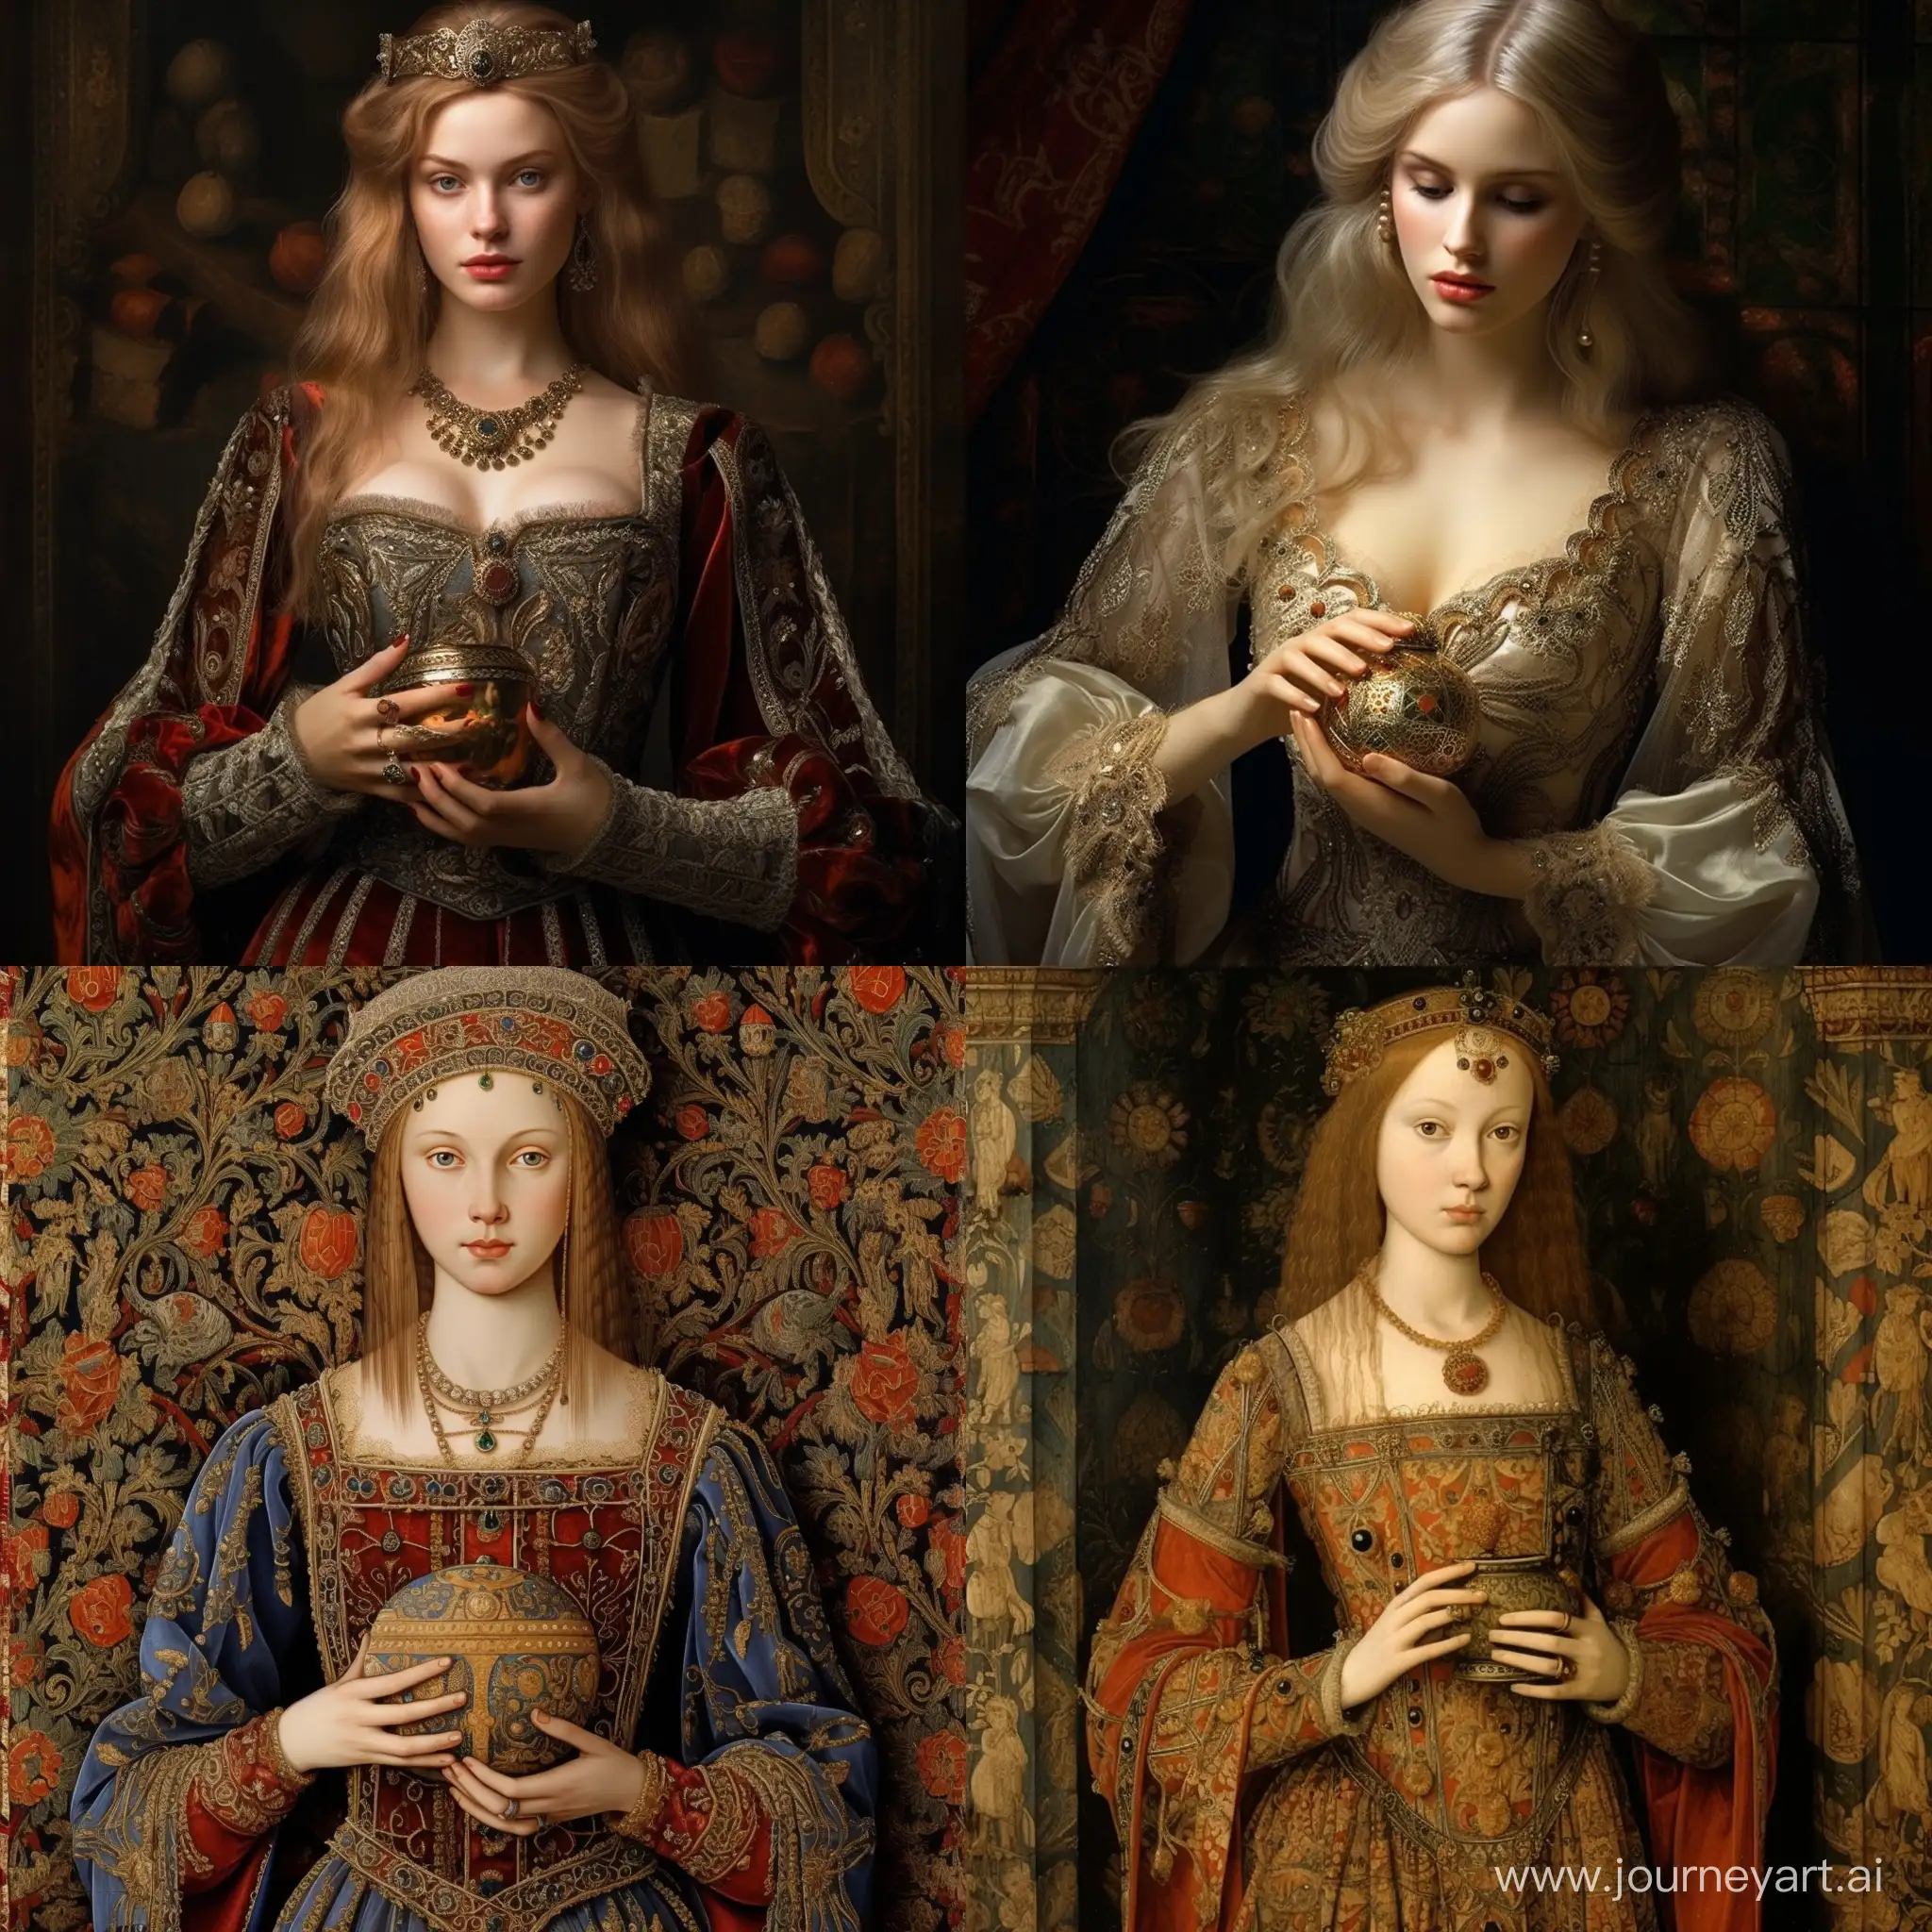 Женщина 14 век, красиво, детально, реалистично, одежда! Того времени, держит в руках парфюм